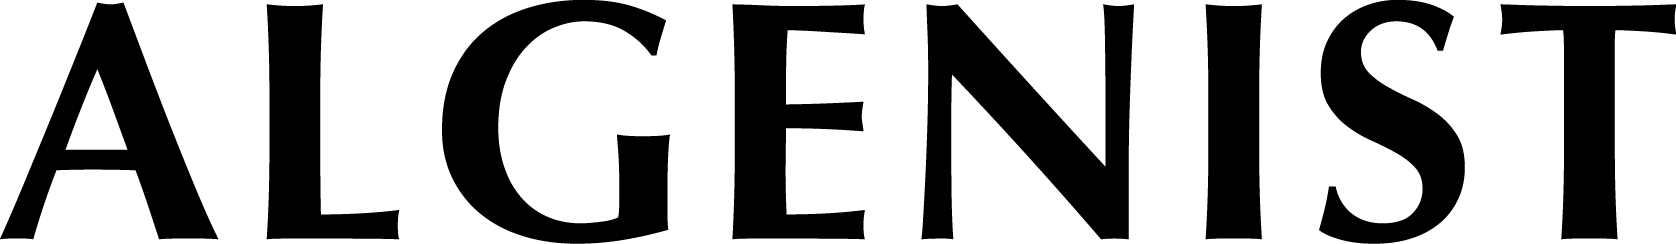 Algenist-Logo-black-floating.png